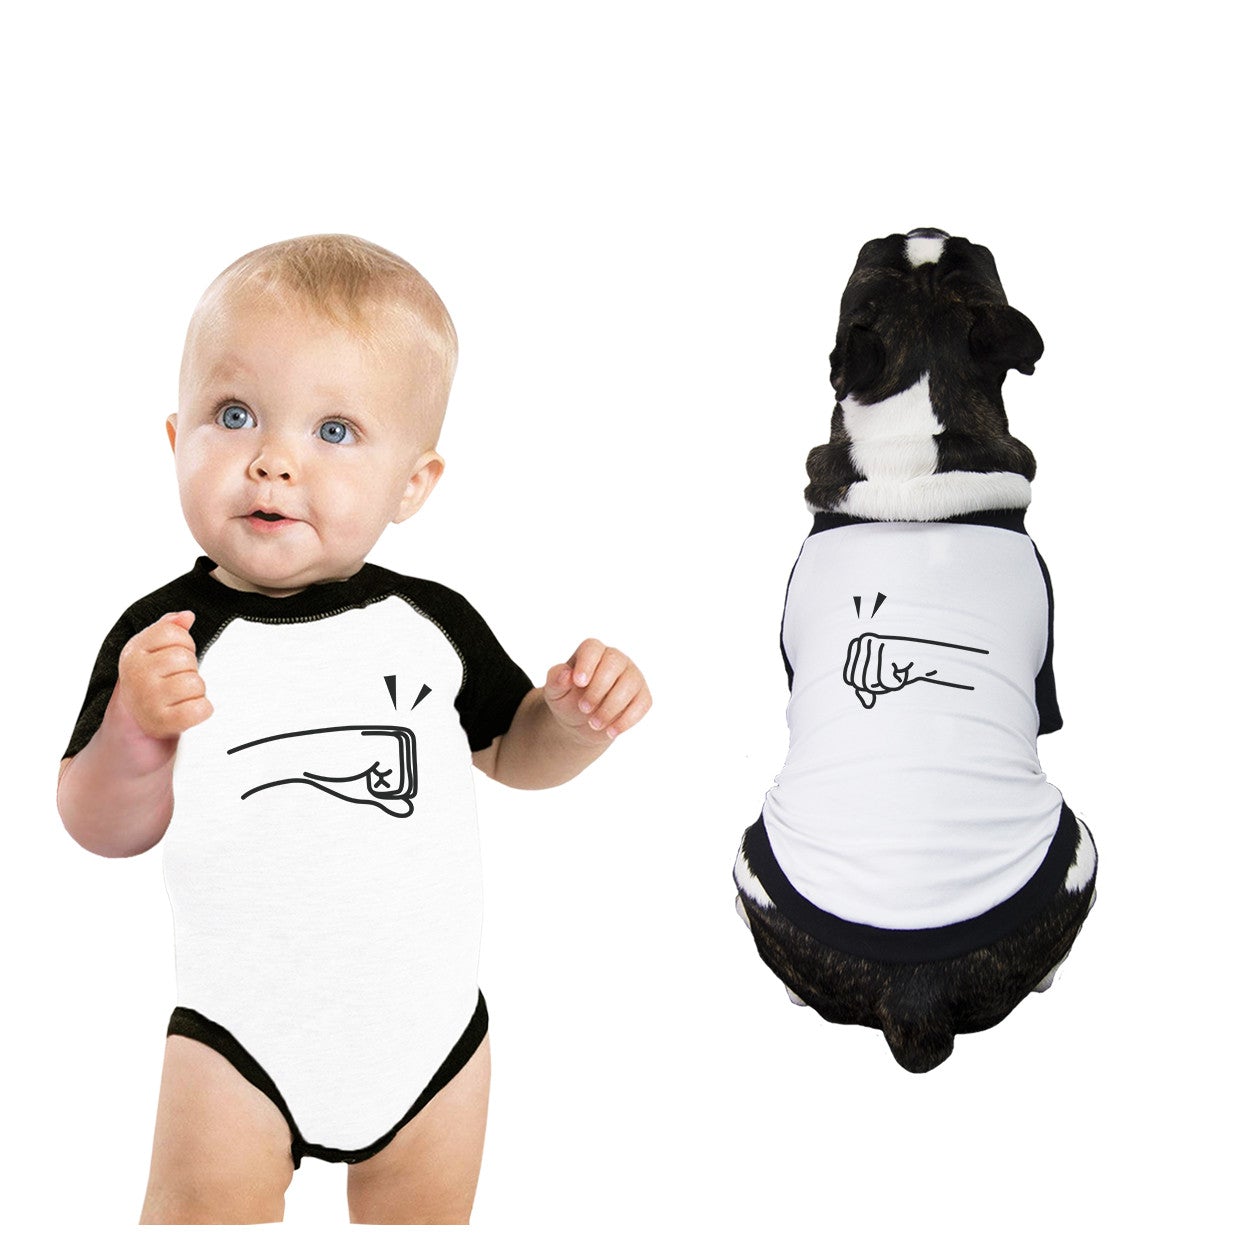 Fists Pound Baby and Pet Matching Black And White Baseball Shirts